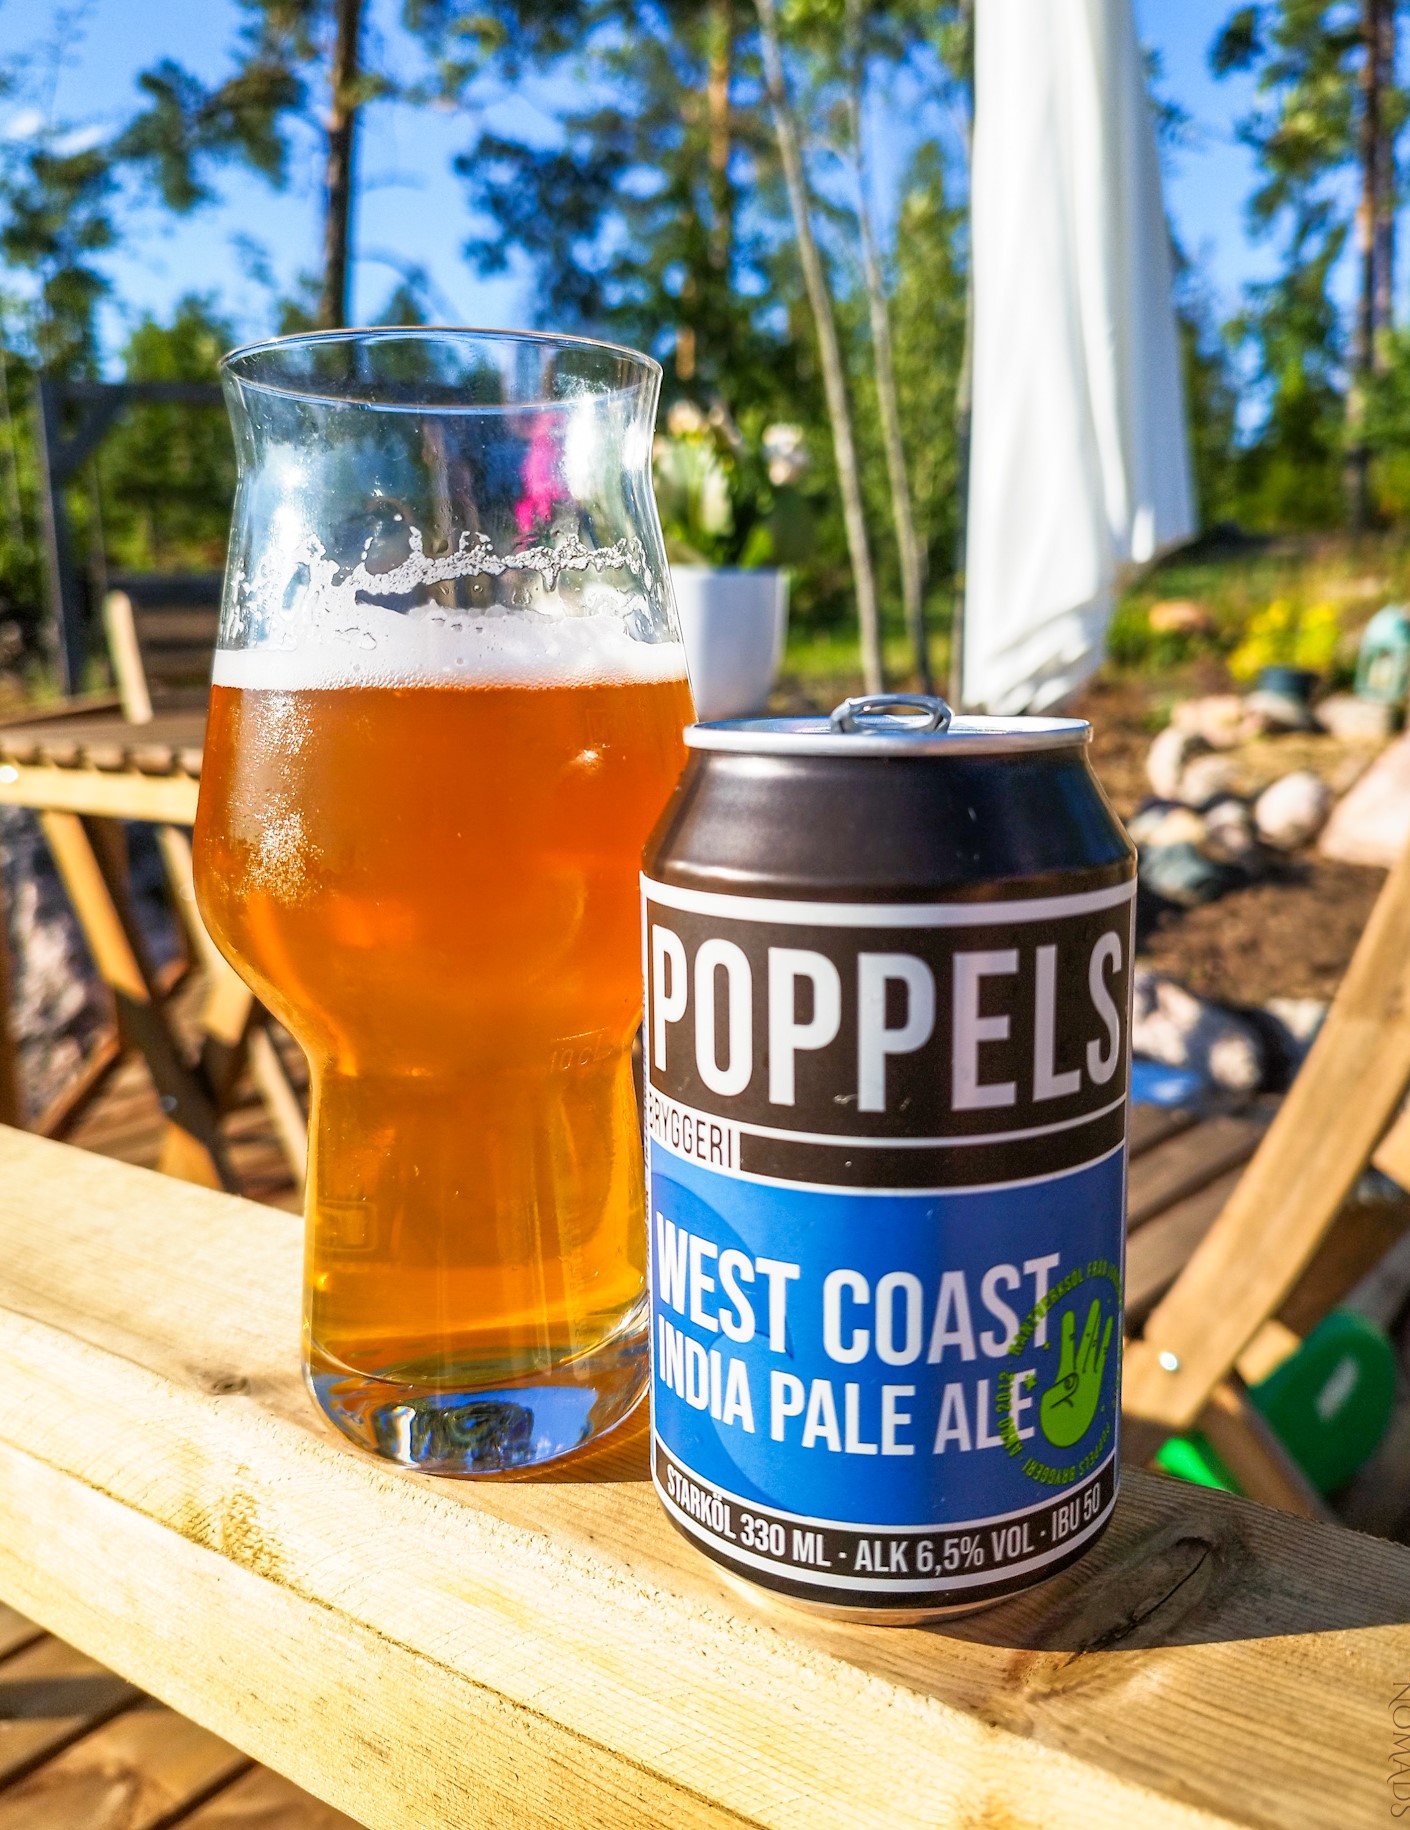 Poppels - West coast IPA | Craft beer in Sweden: Poppels Bryggeri | Craft Beer Nomads